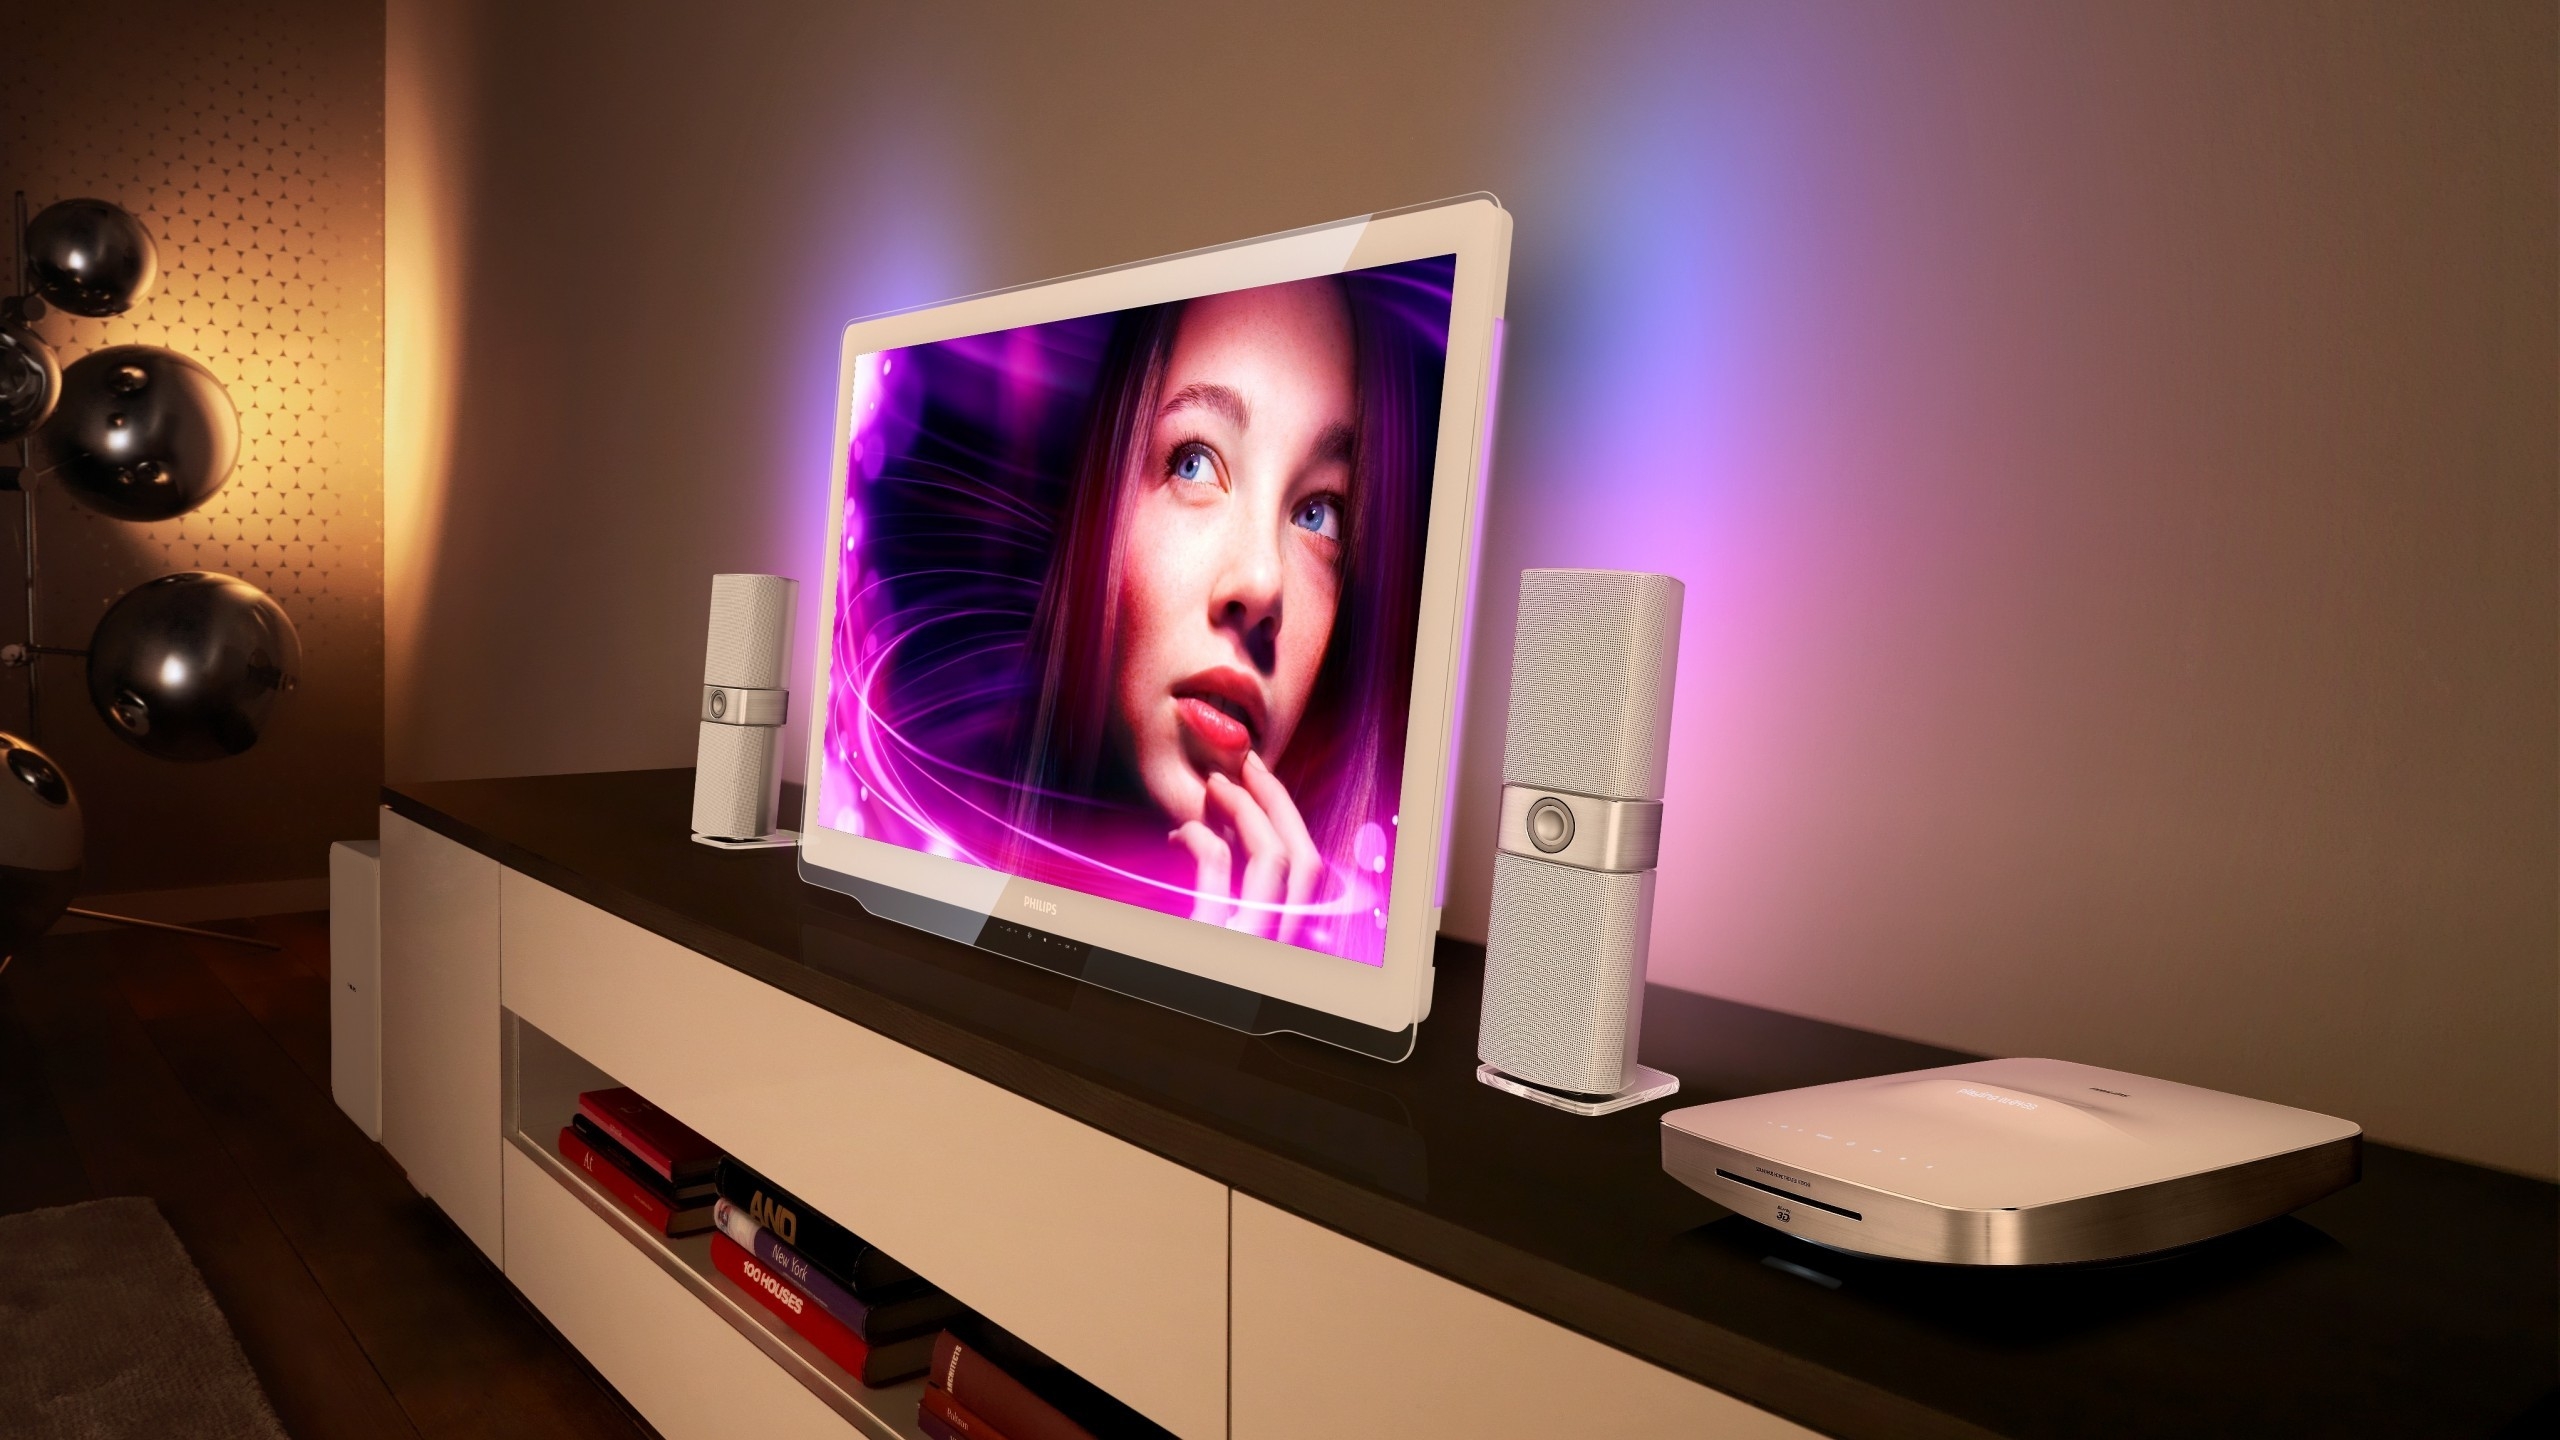 Philips DesignLine TV for 2560x1440 HDTV resolution